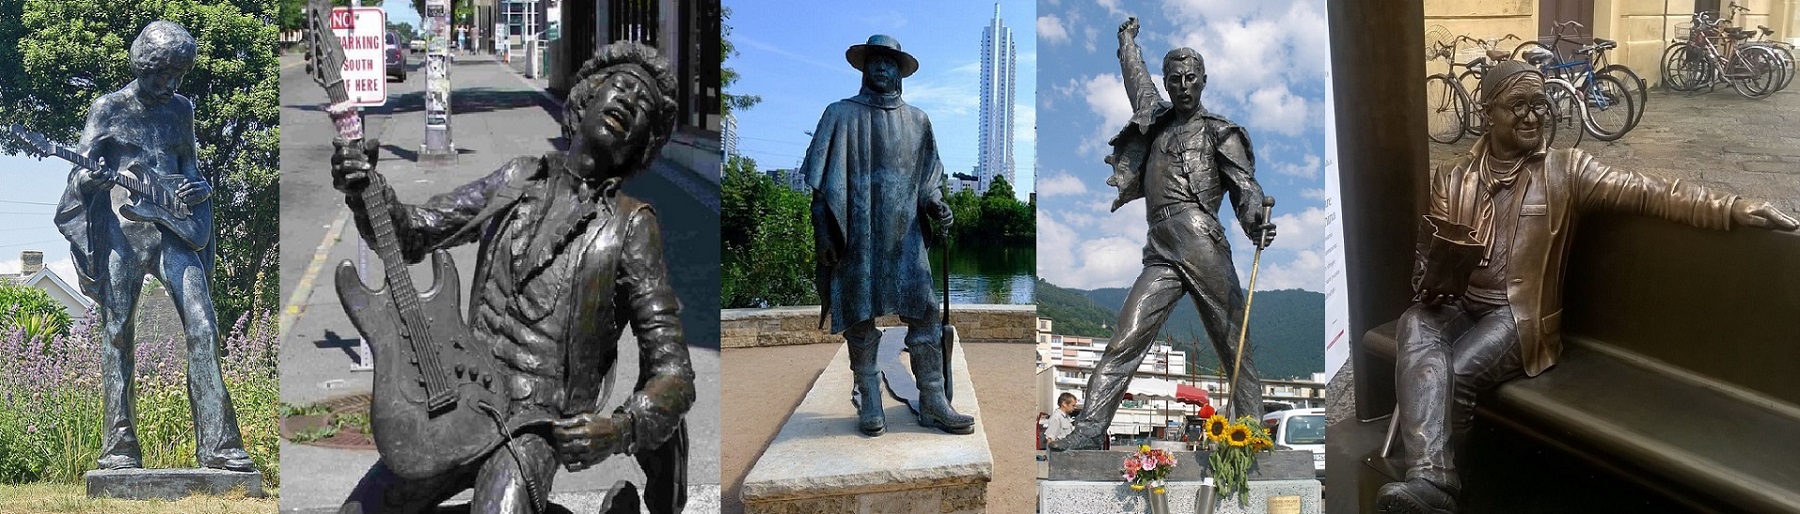 Le statue dedicate ai grandi che non ci sono più...ma non solo!